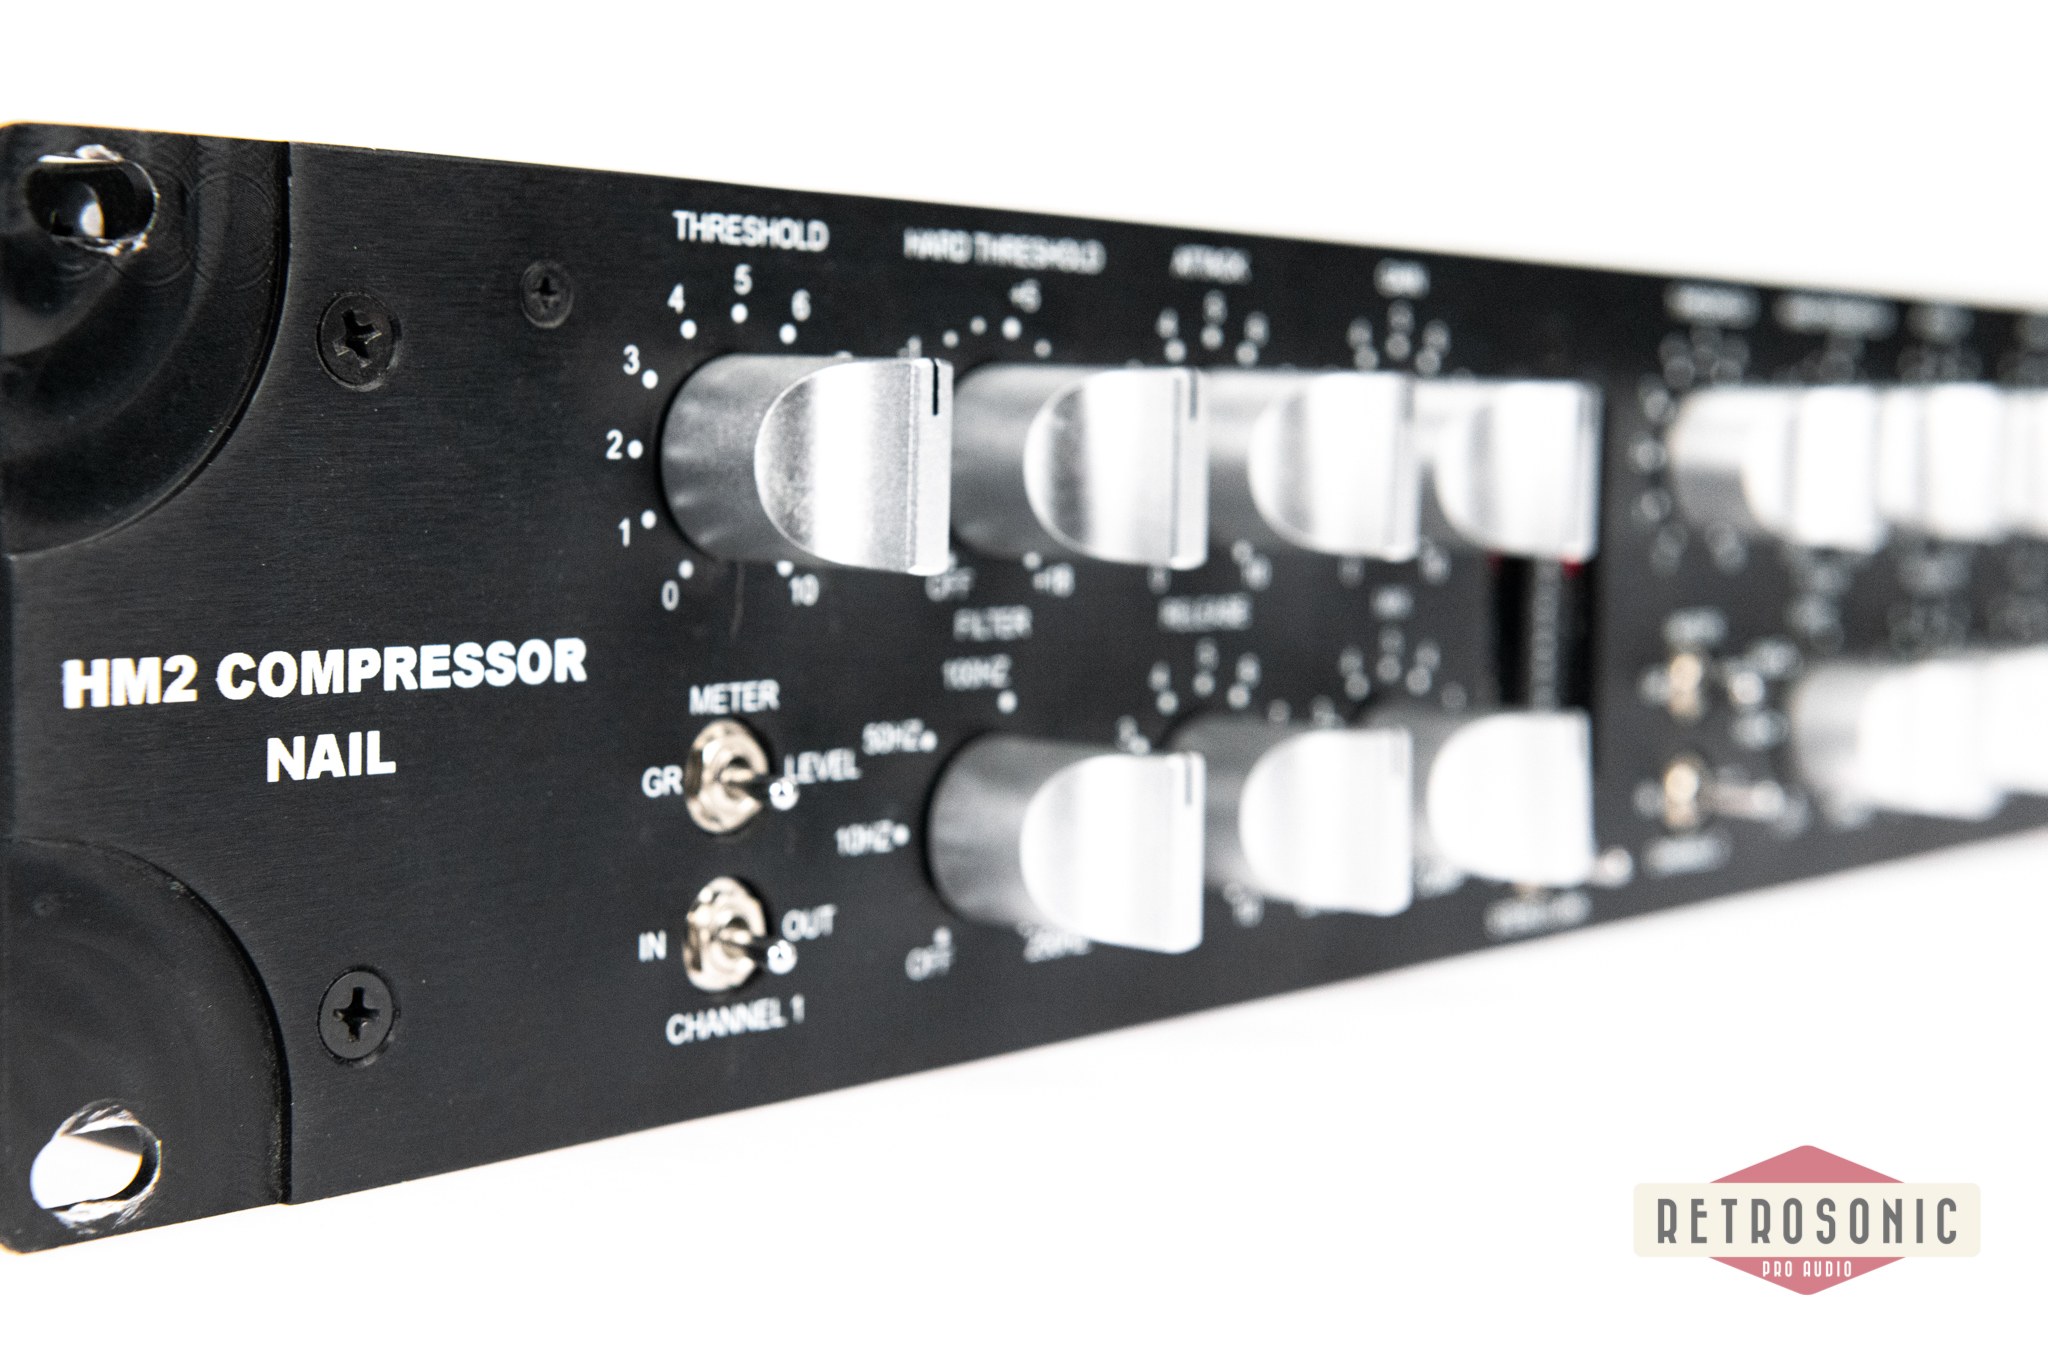 A Design Audio HM2 Compressor Nail - wide 3